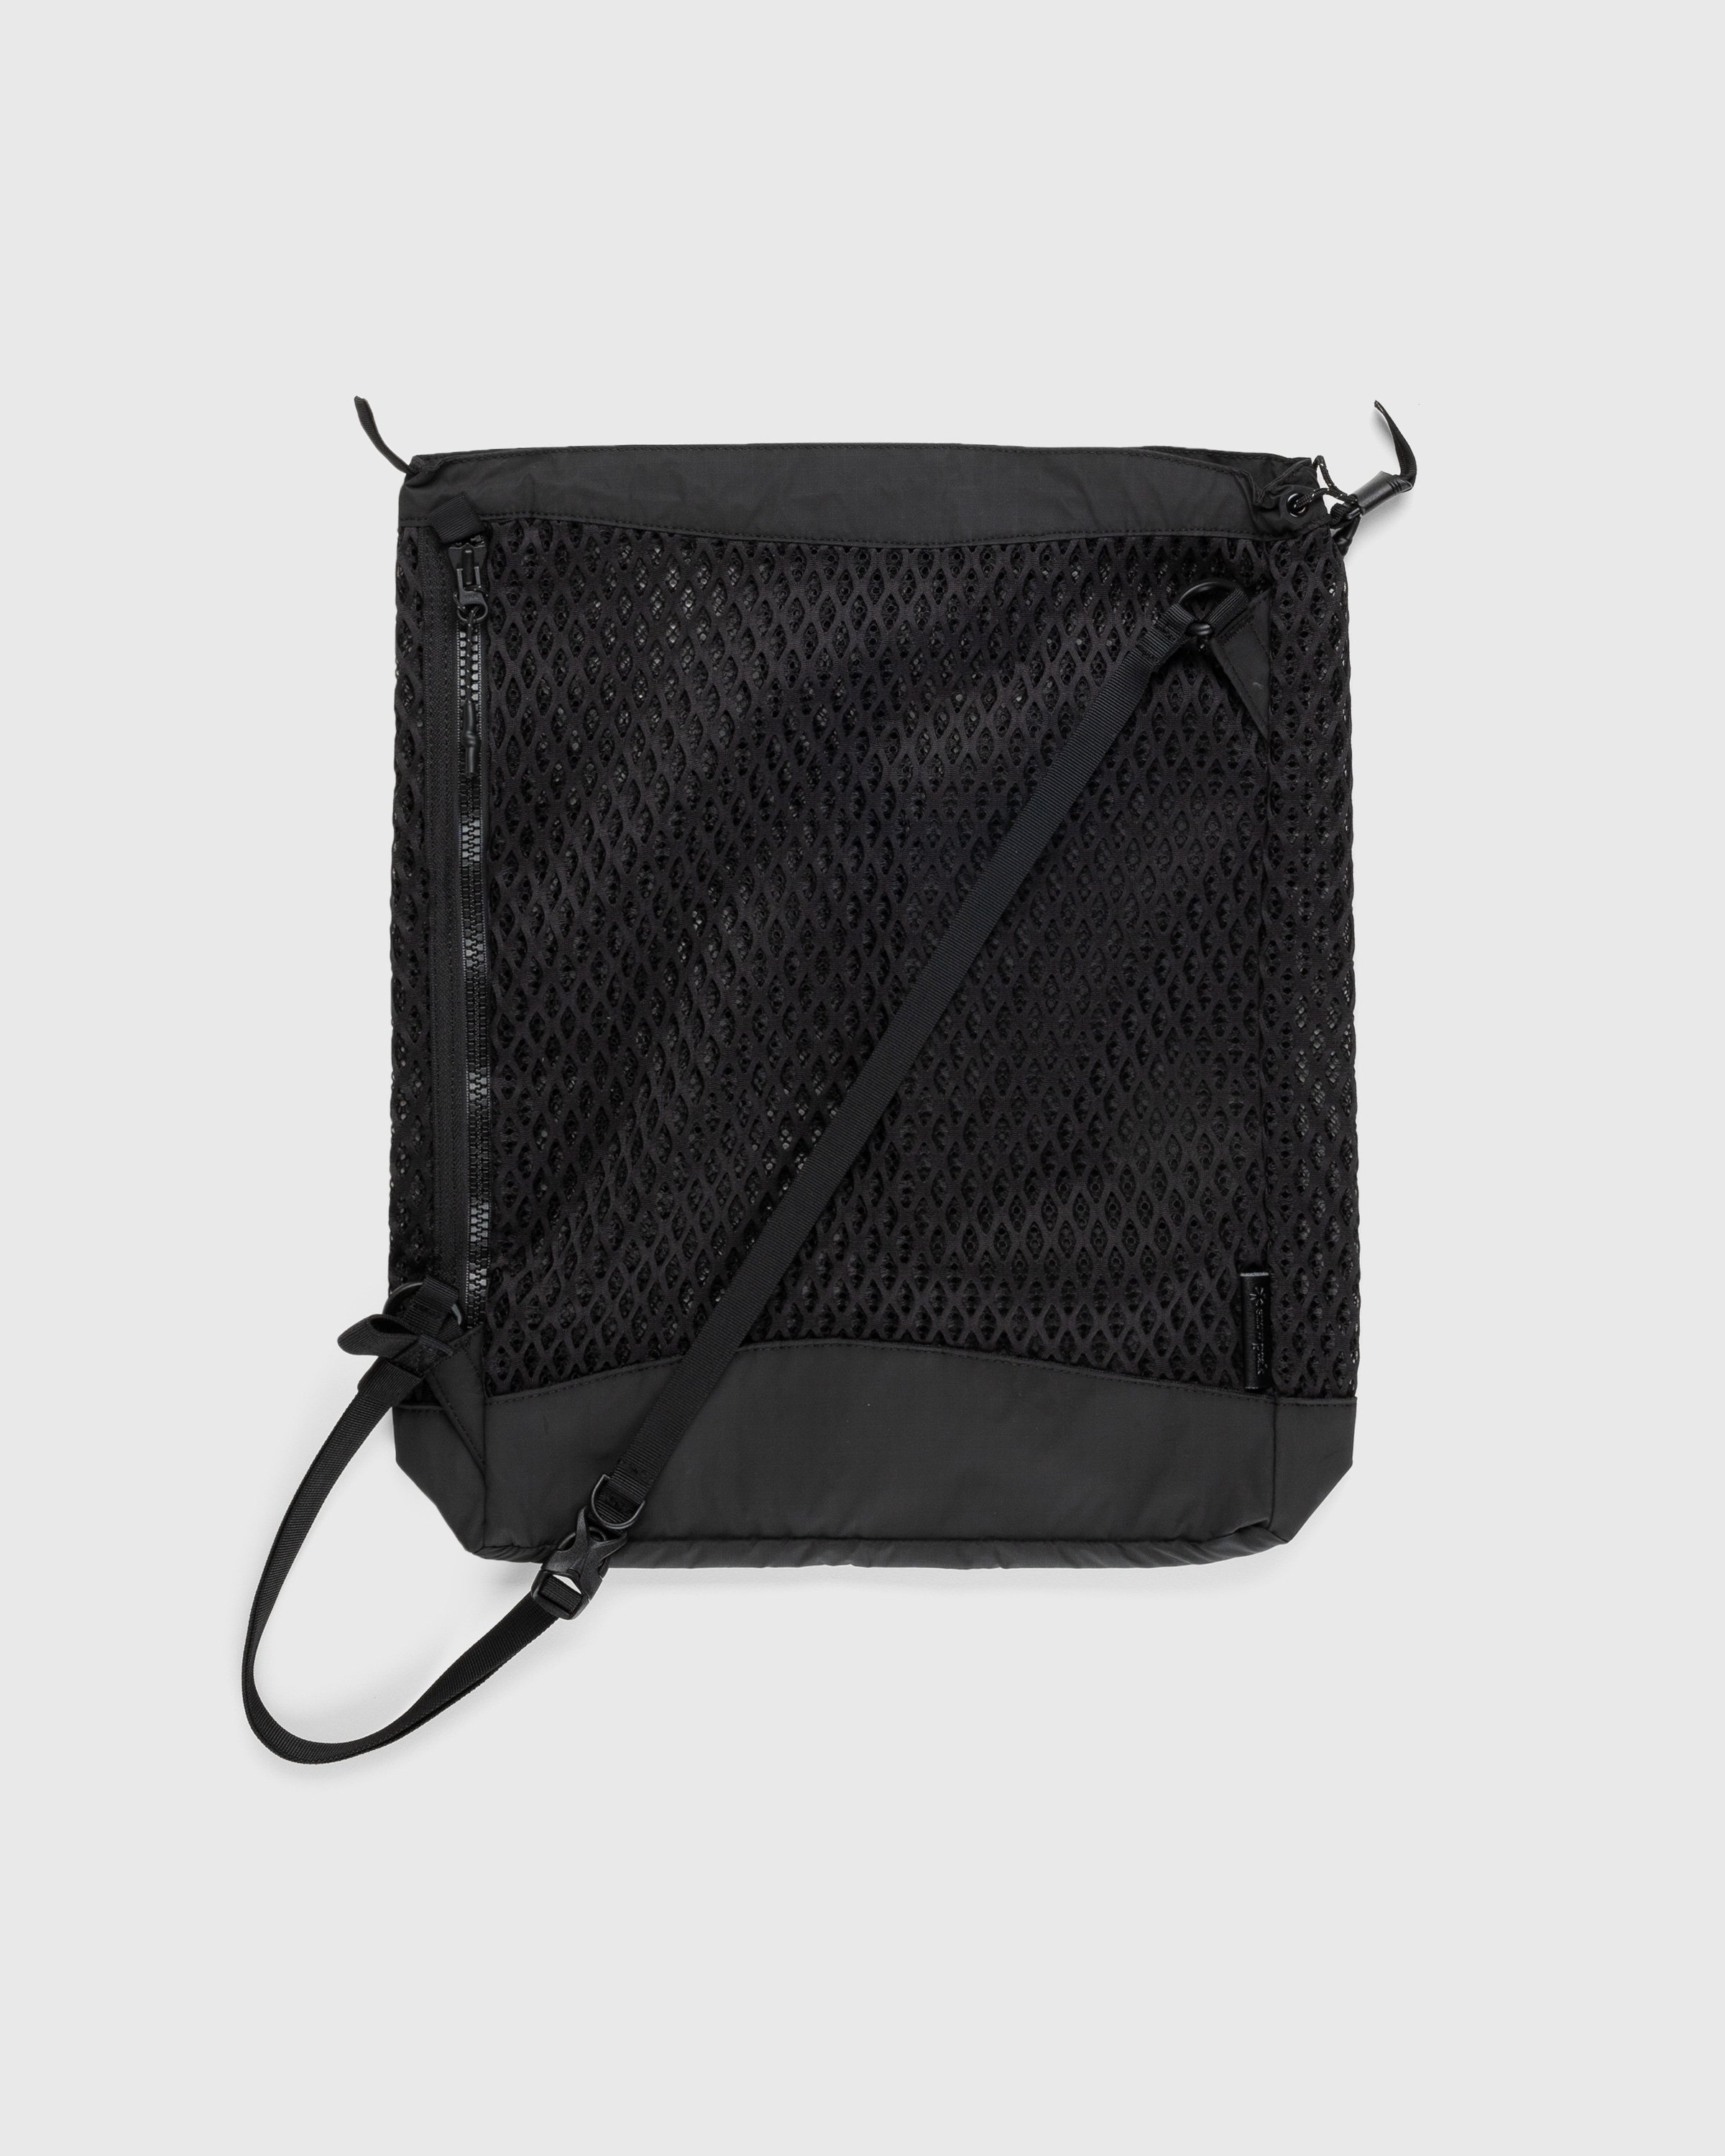 Snow Peak - Double Face Mesh Shoulder Bag Black - Accessories - Black - Image 1